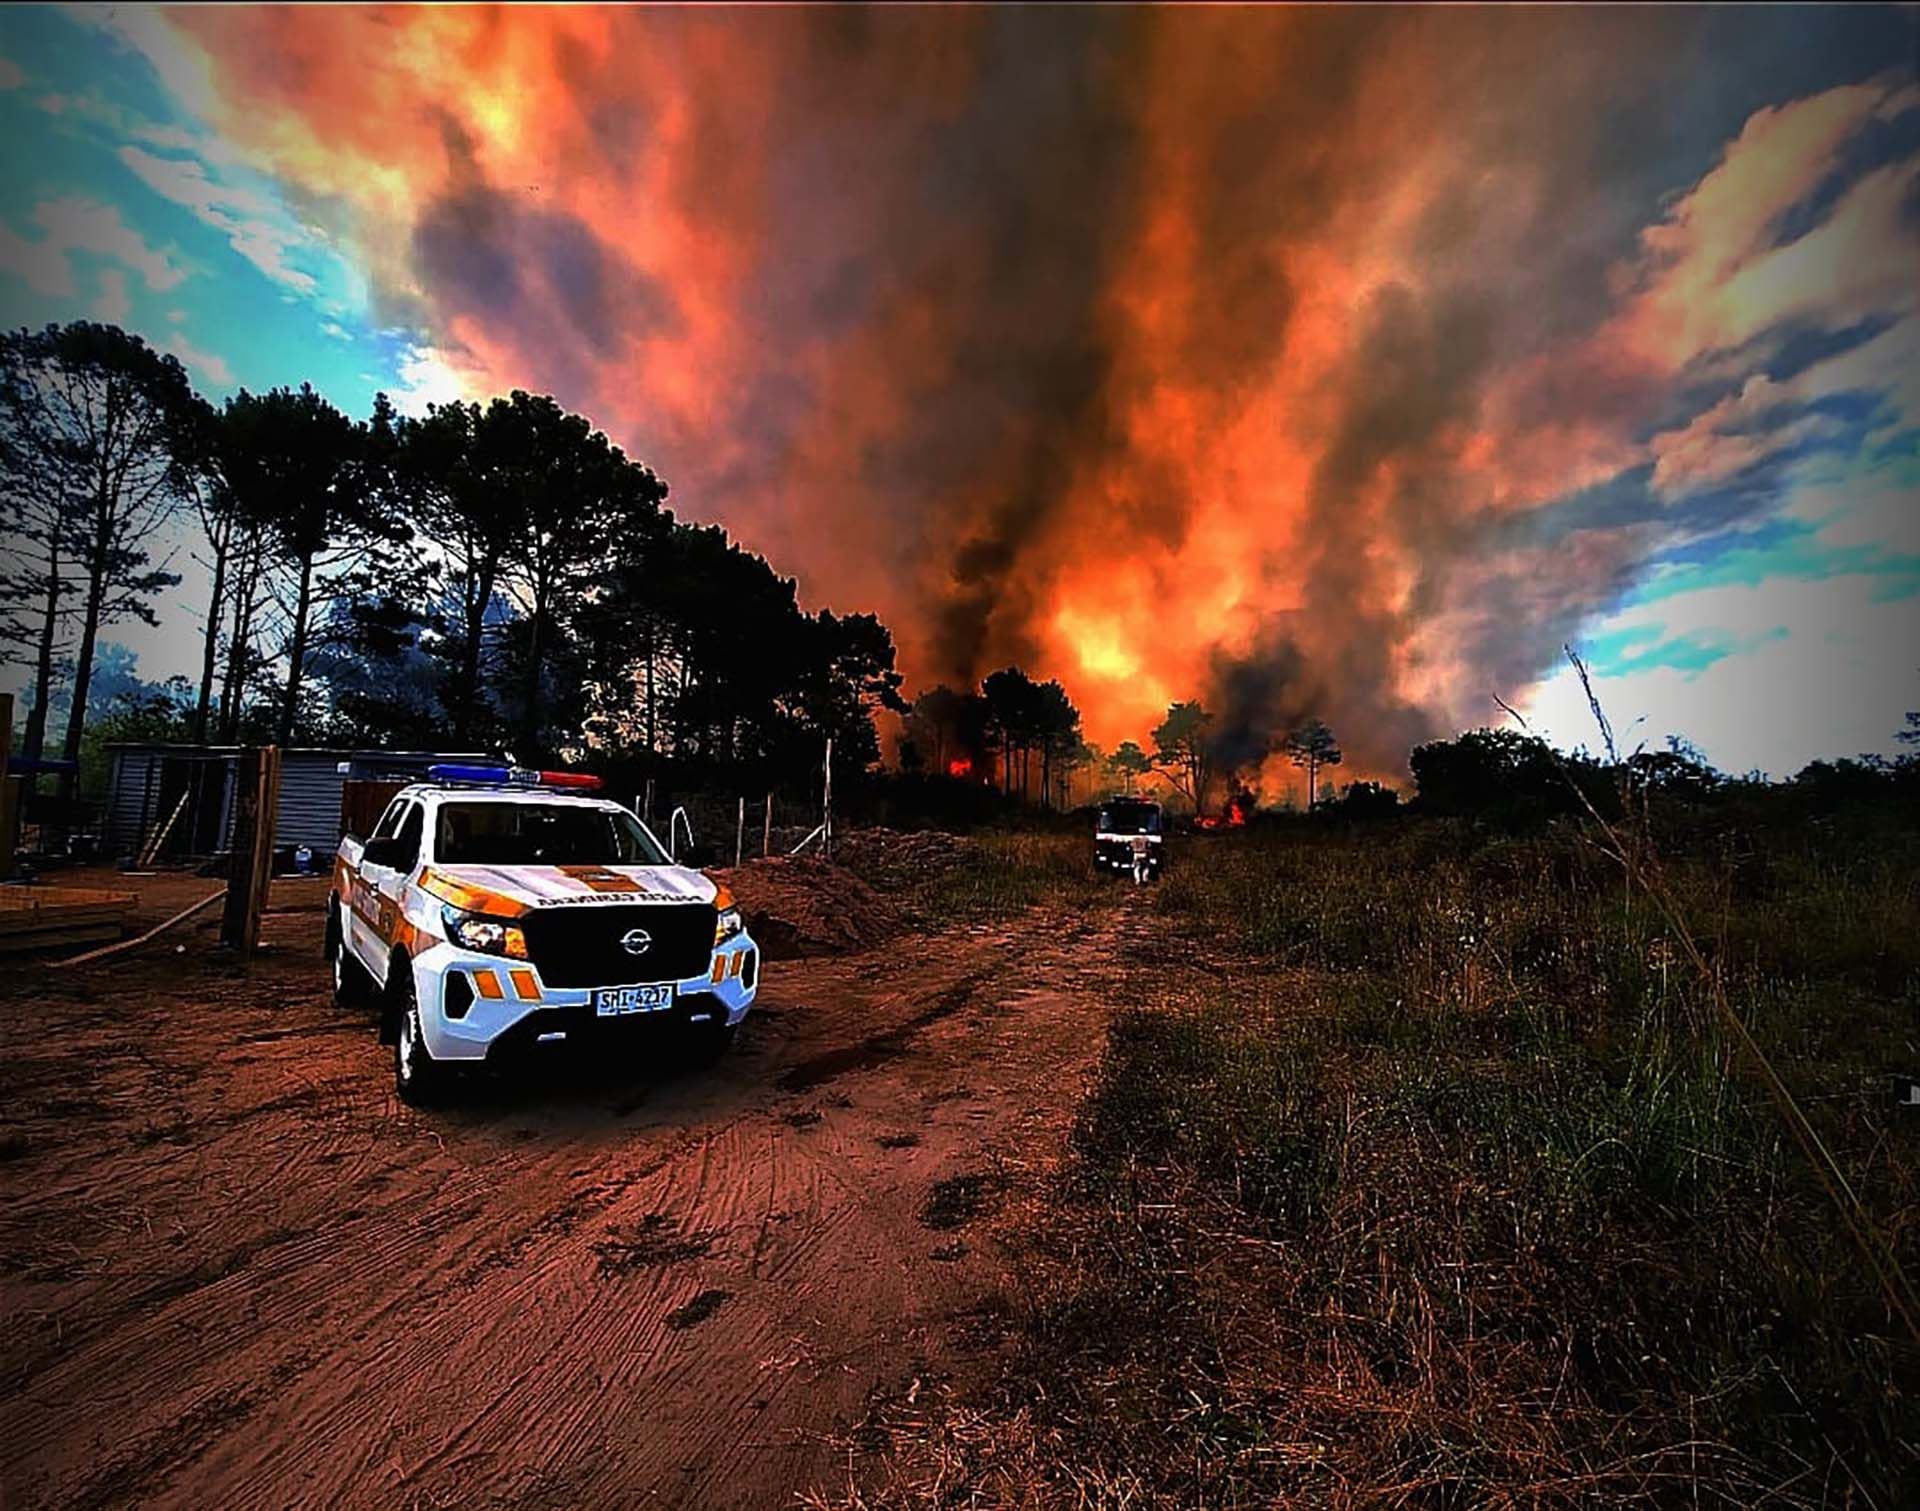 Comprender las causas y orígenes de los incendios es esencial para enfrentar y prevenir futuras catástrofes